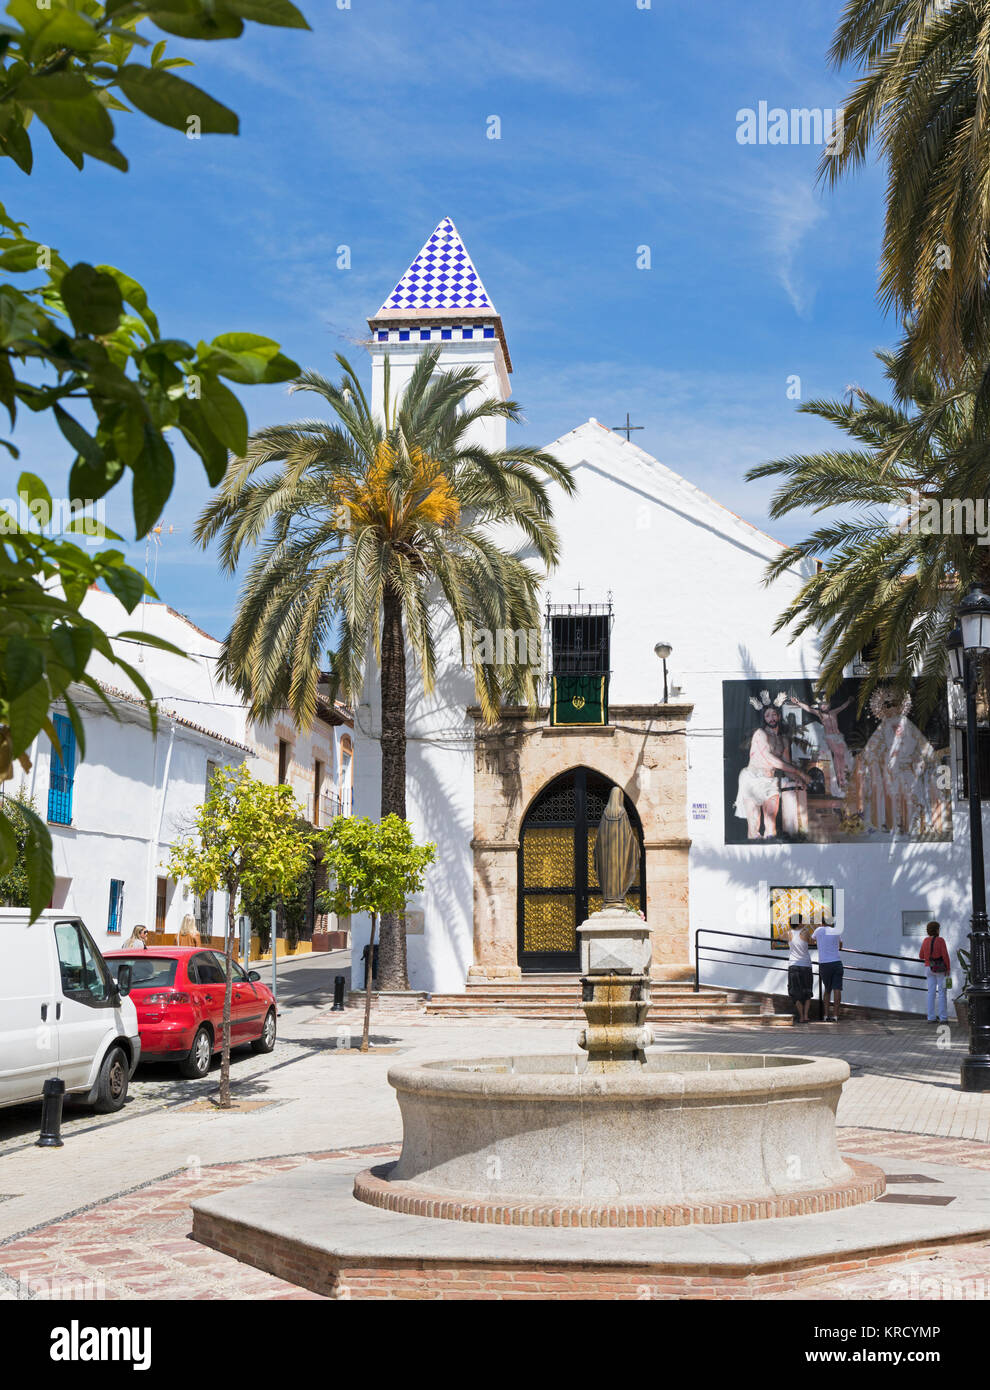 Marbella, Costa del Sol, Provinz Malaga, Andalusien, Südspanien. Hermita del Santo Cristo oder die Einsiedelei des heiligen Christus in der Altstadt. Stockfoto